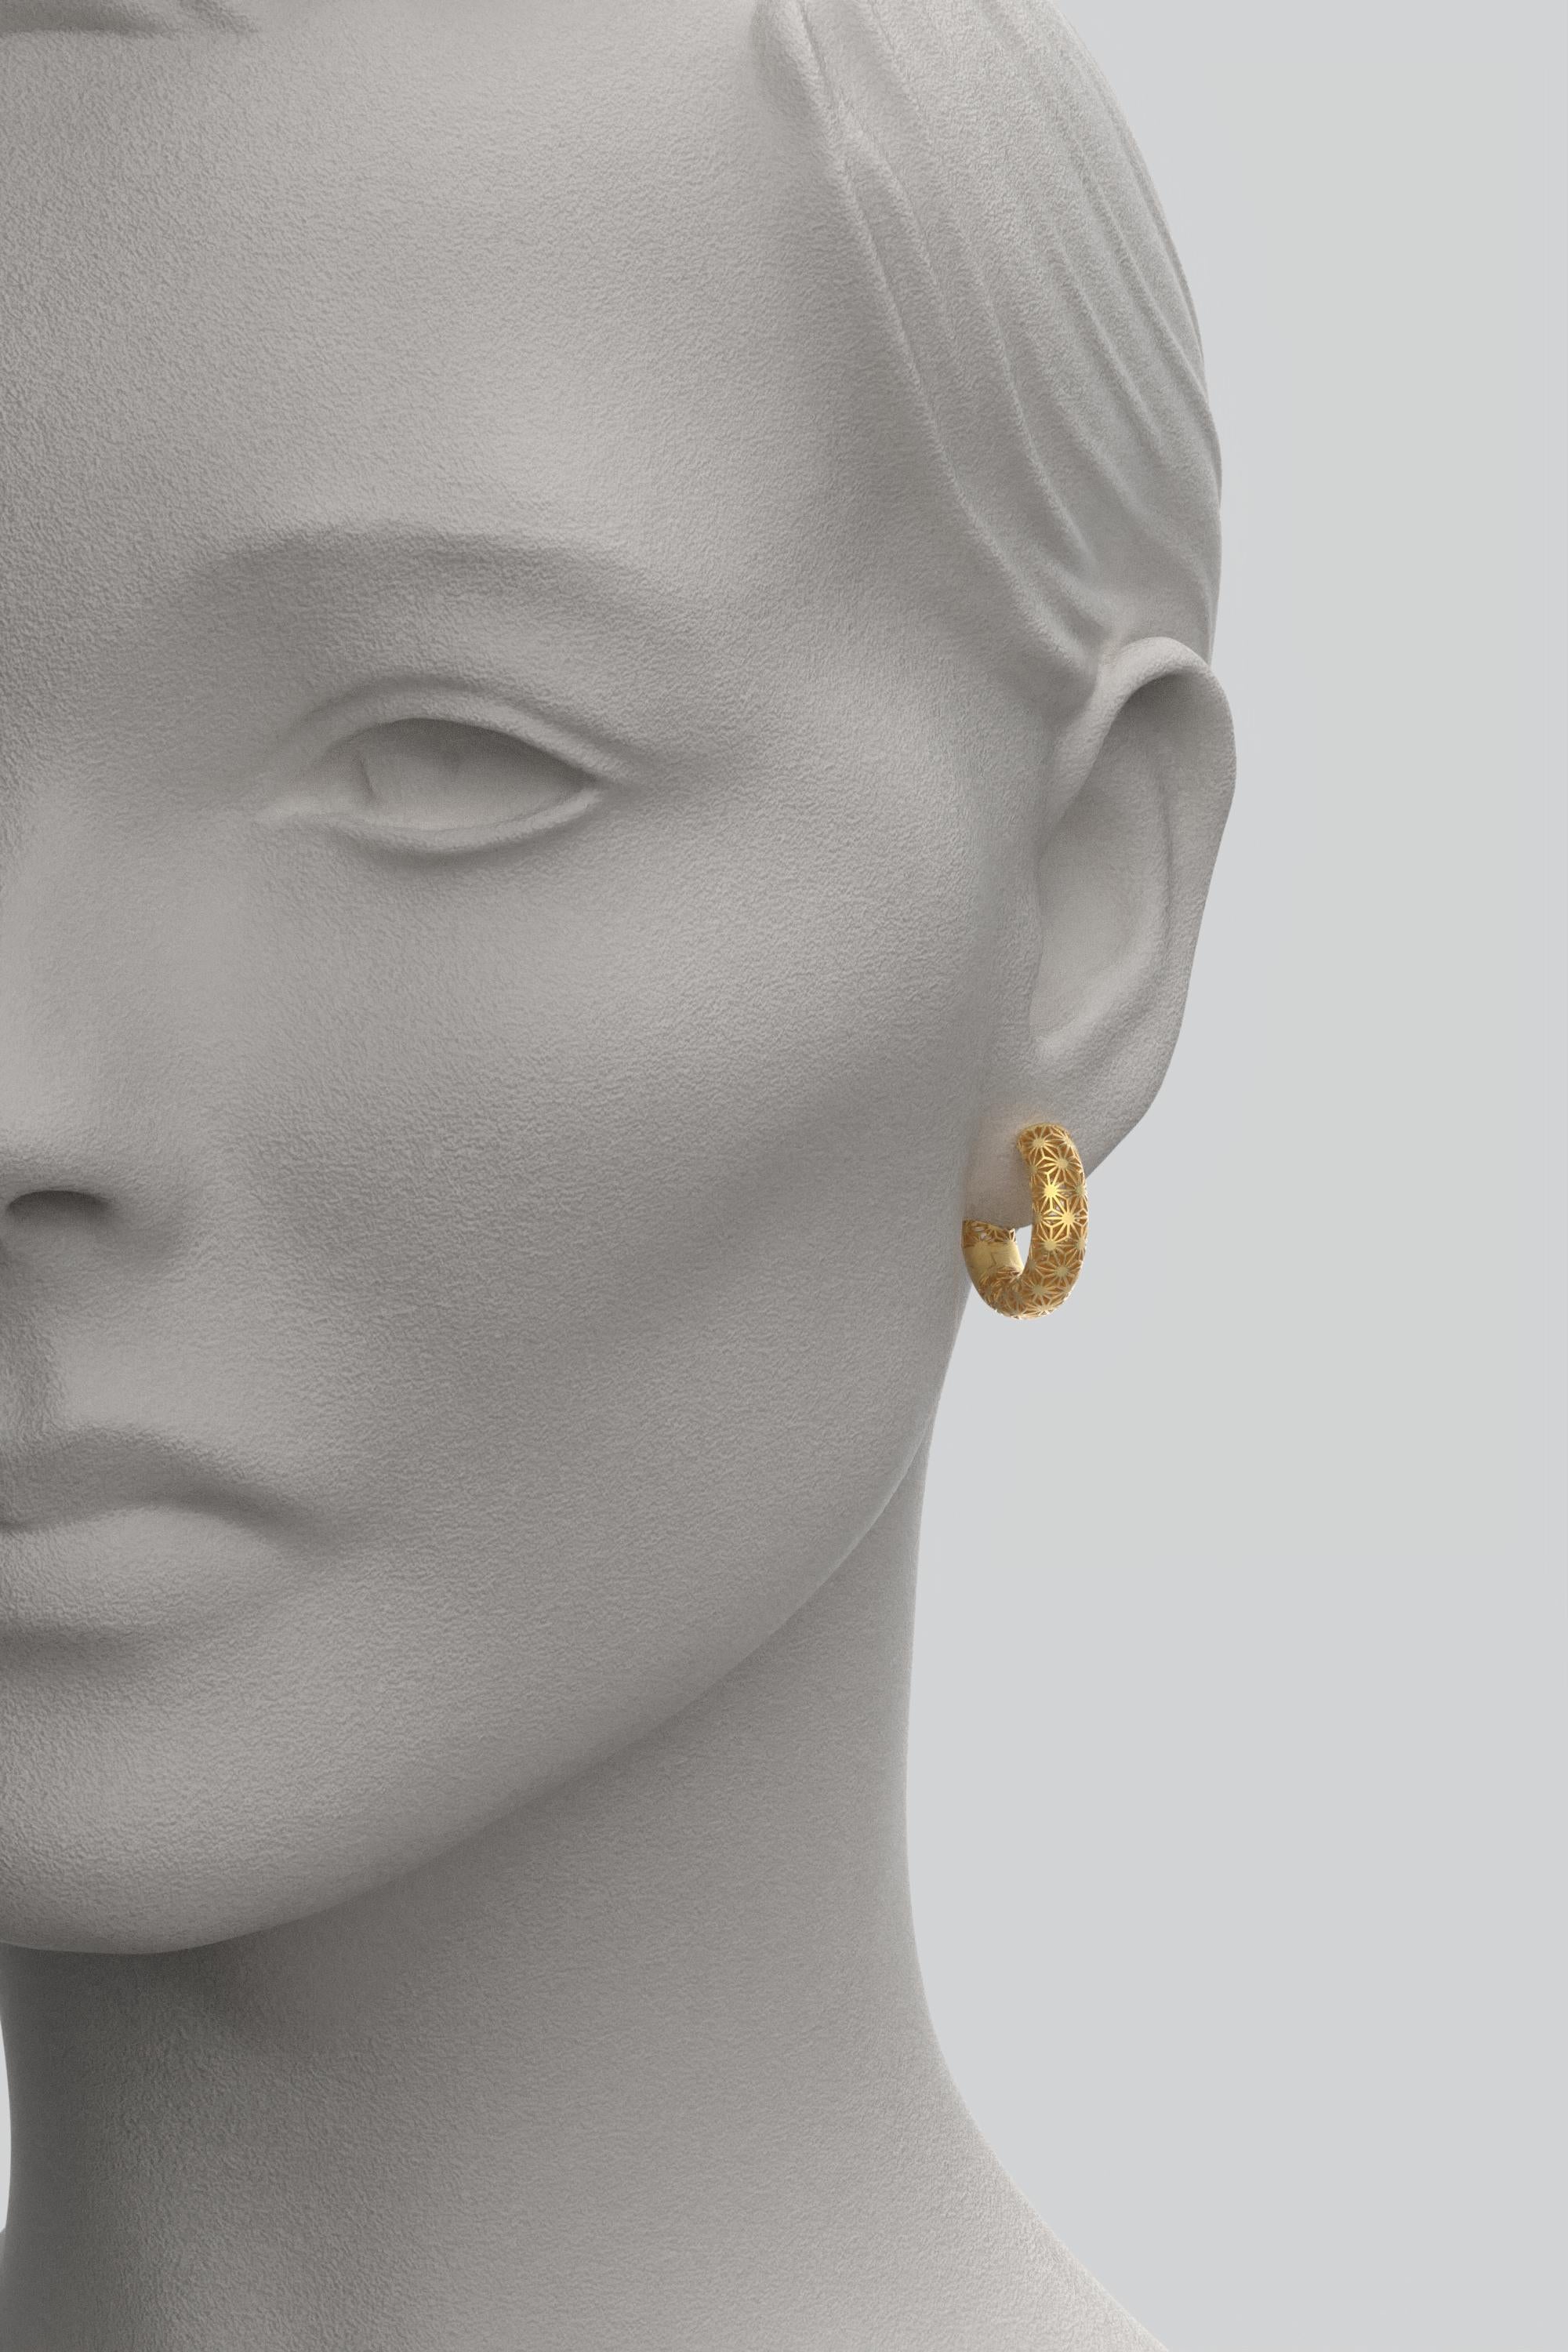  Oltremare Gioielli 14K Italian Gold Hoop Earrings - Sashiko Japanese Pattern  For Sale 1